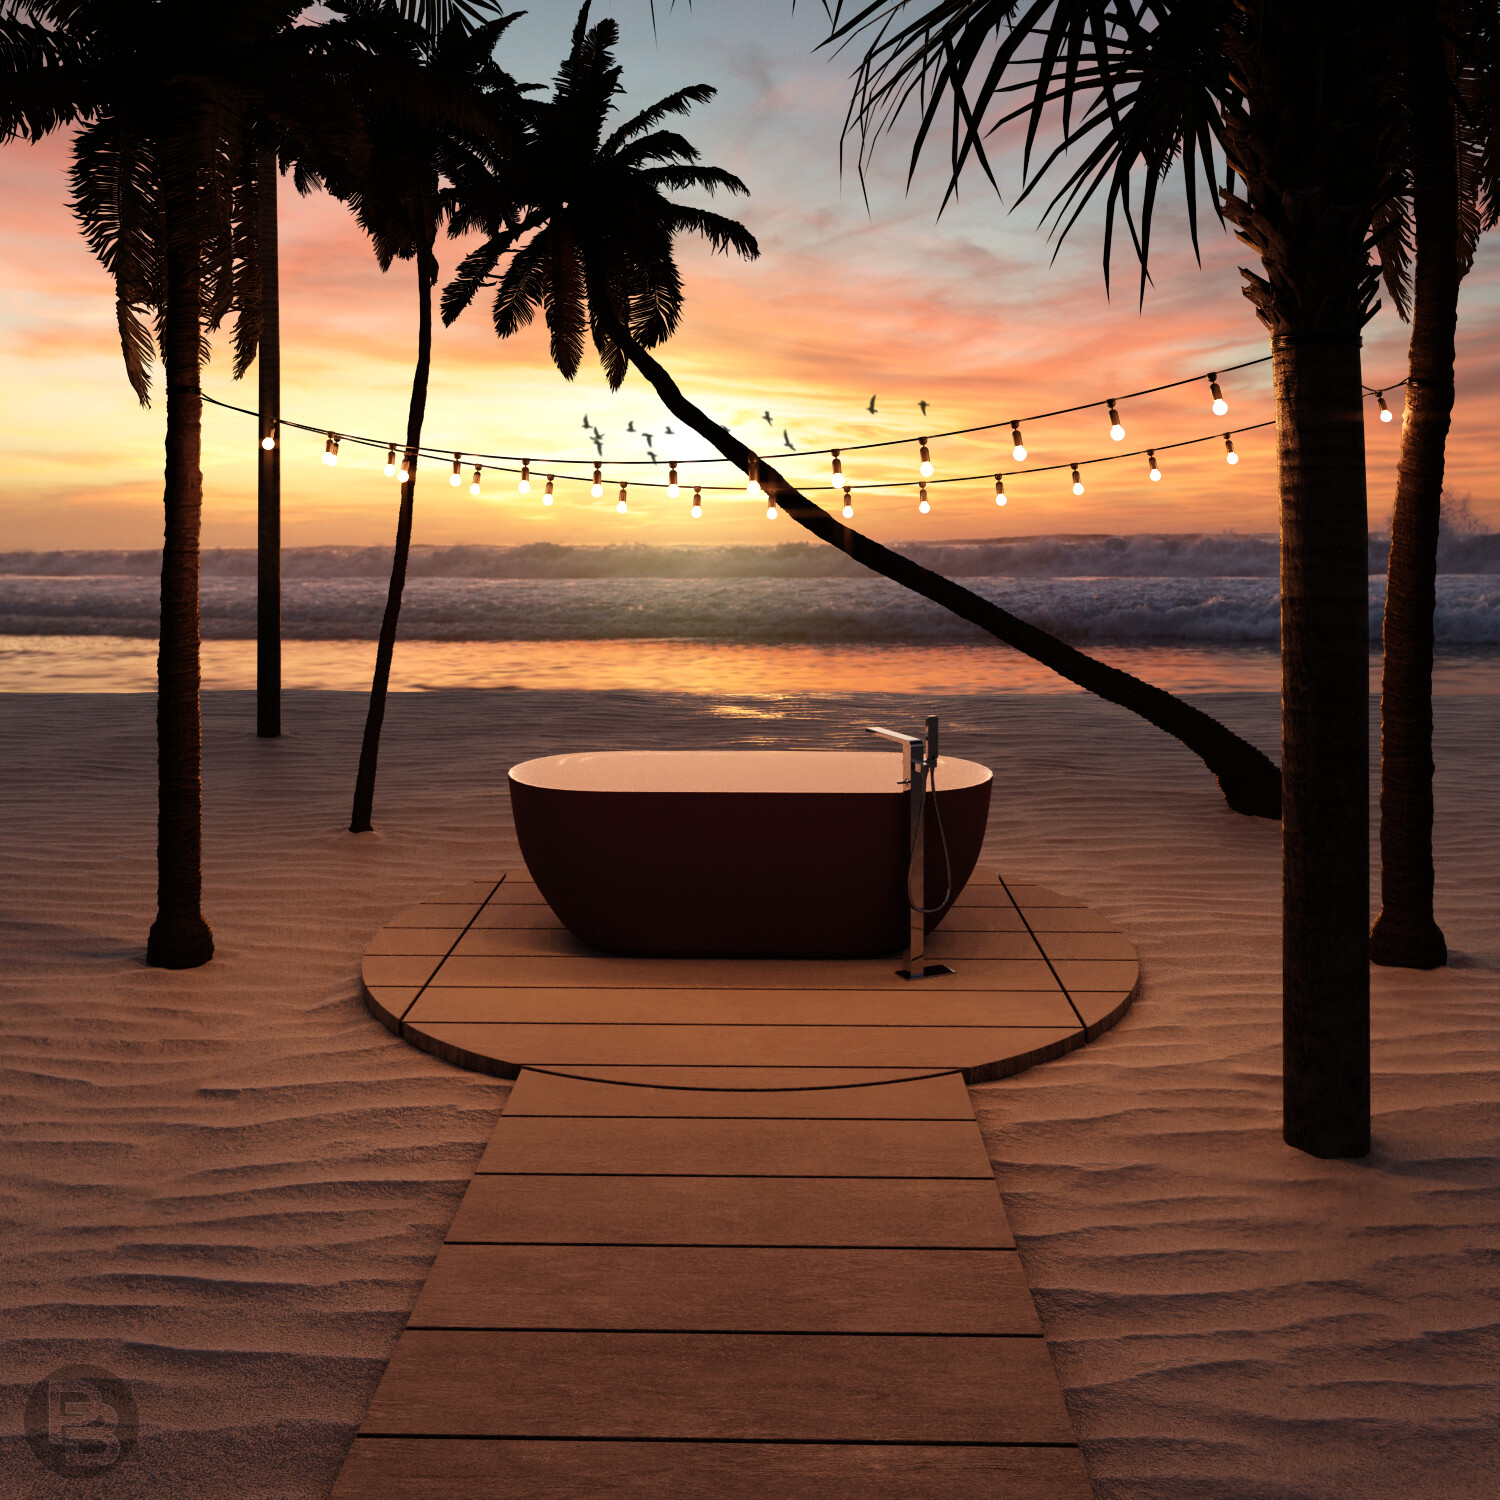 Beach bathtub